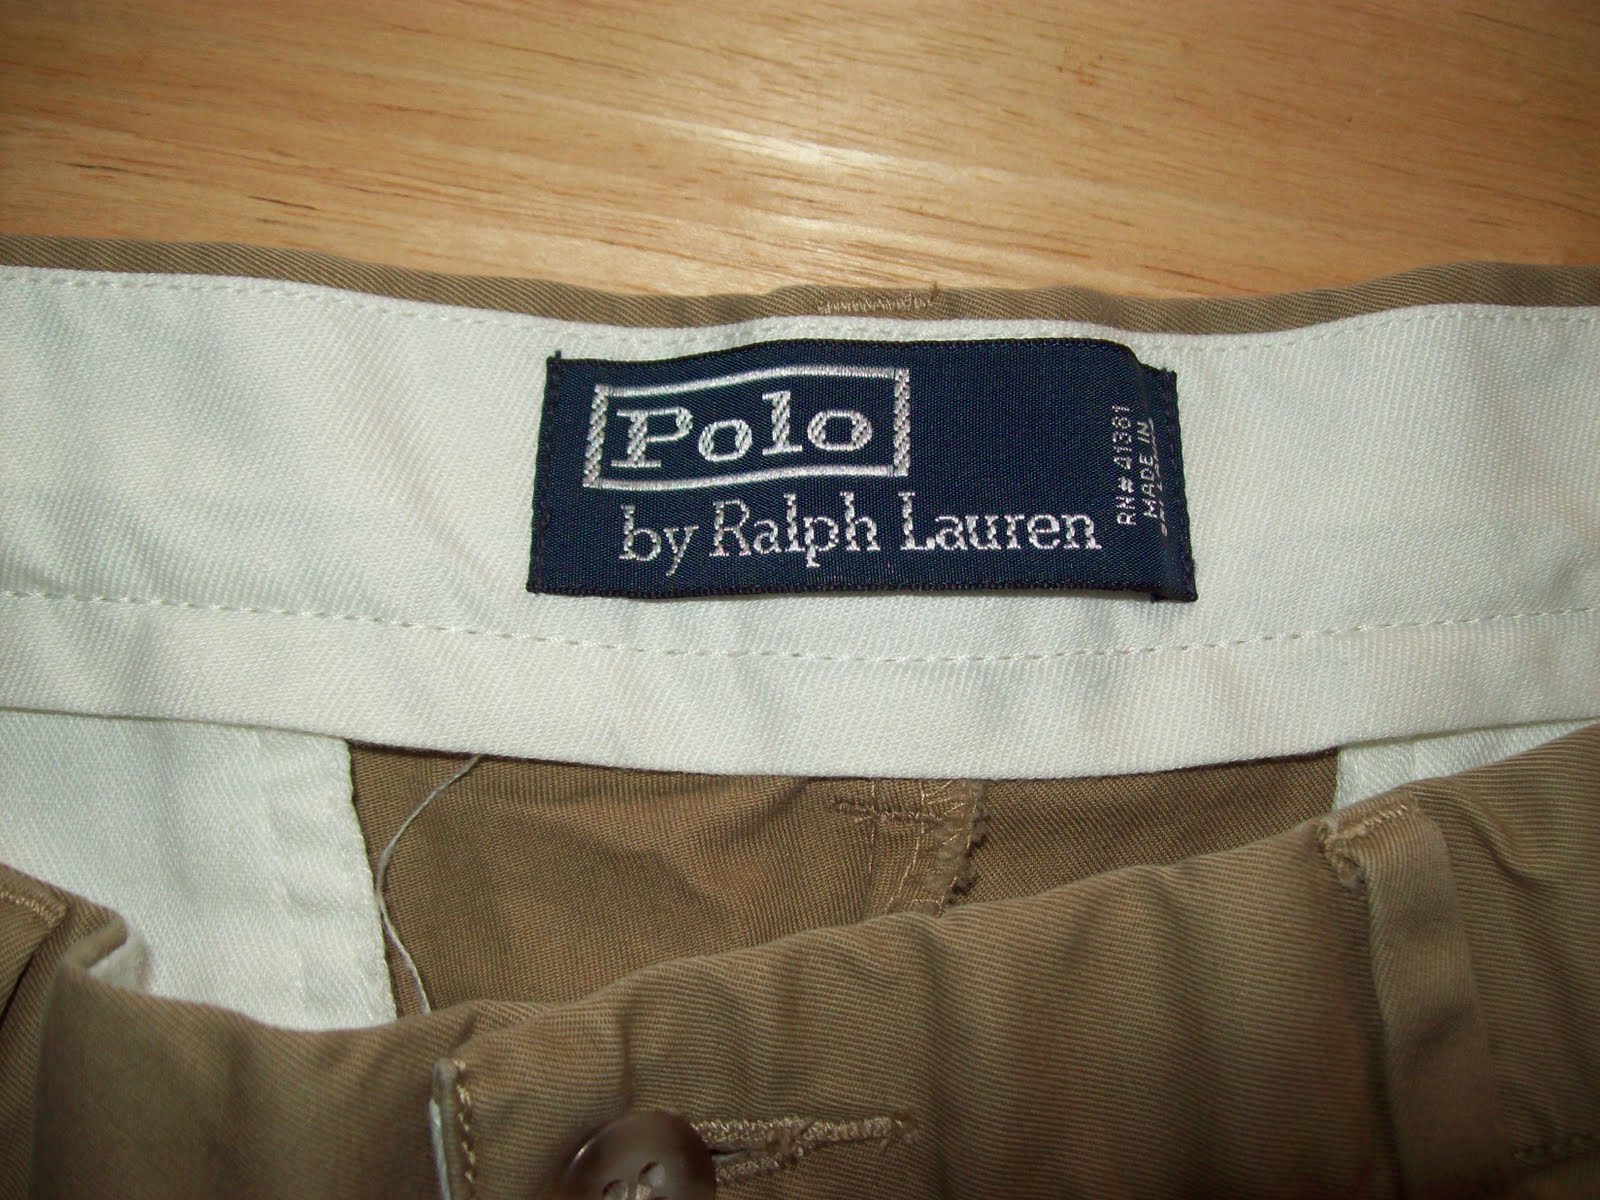 VintageMens: SOLD Polo Ralph Lauren Pants, 32/30